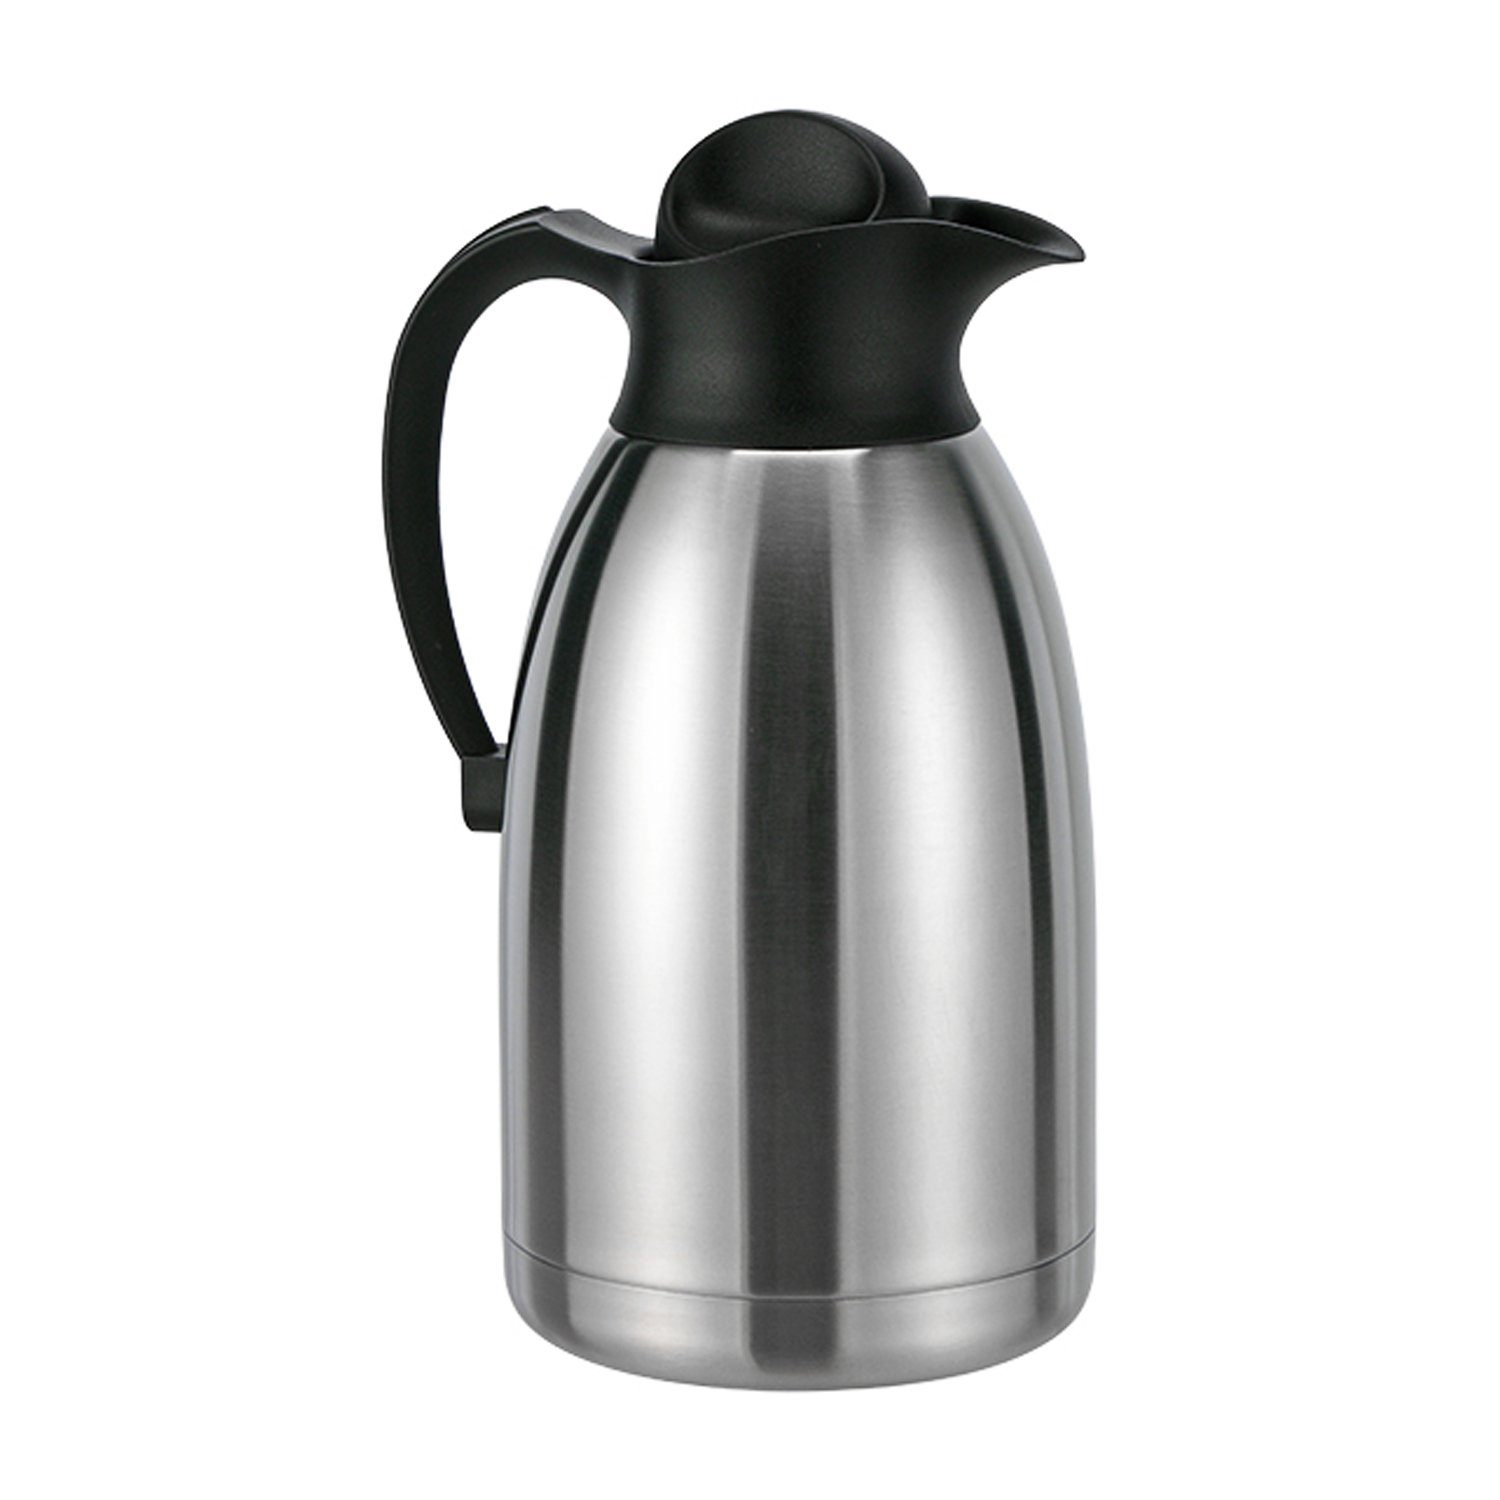 Mojawo Thermobehälter Kaffeekanne Edelstahl Thermoskanne Doppelwandig Liter Isolierkanne 2